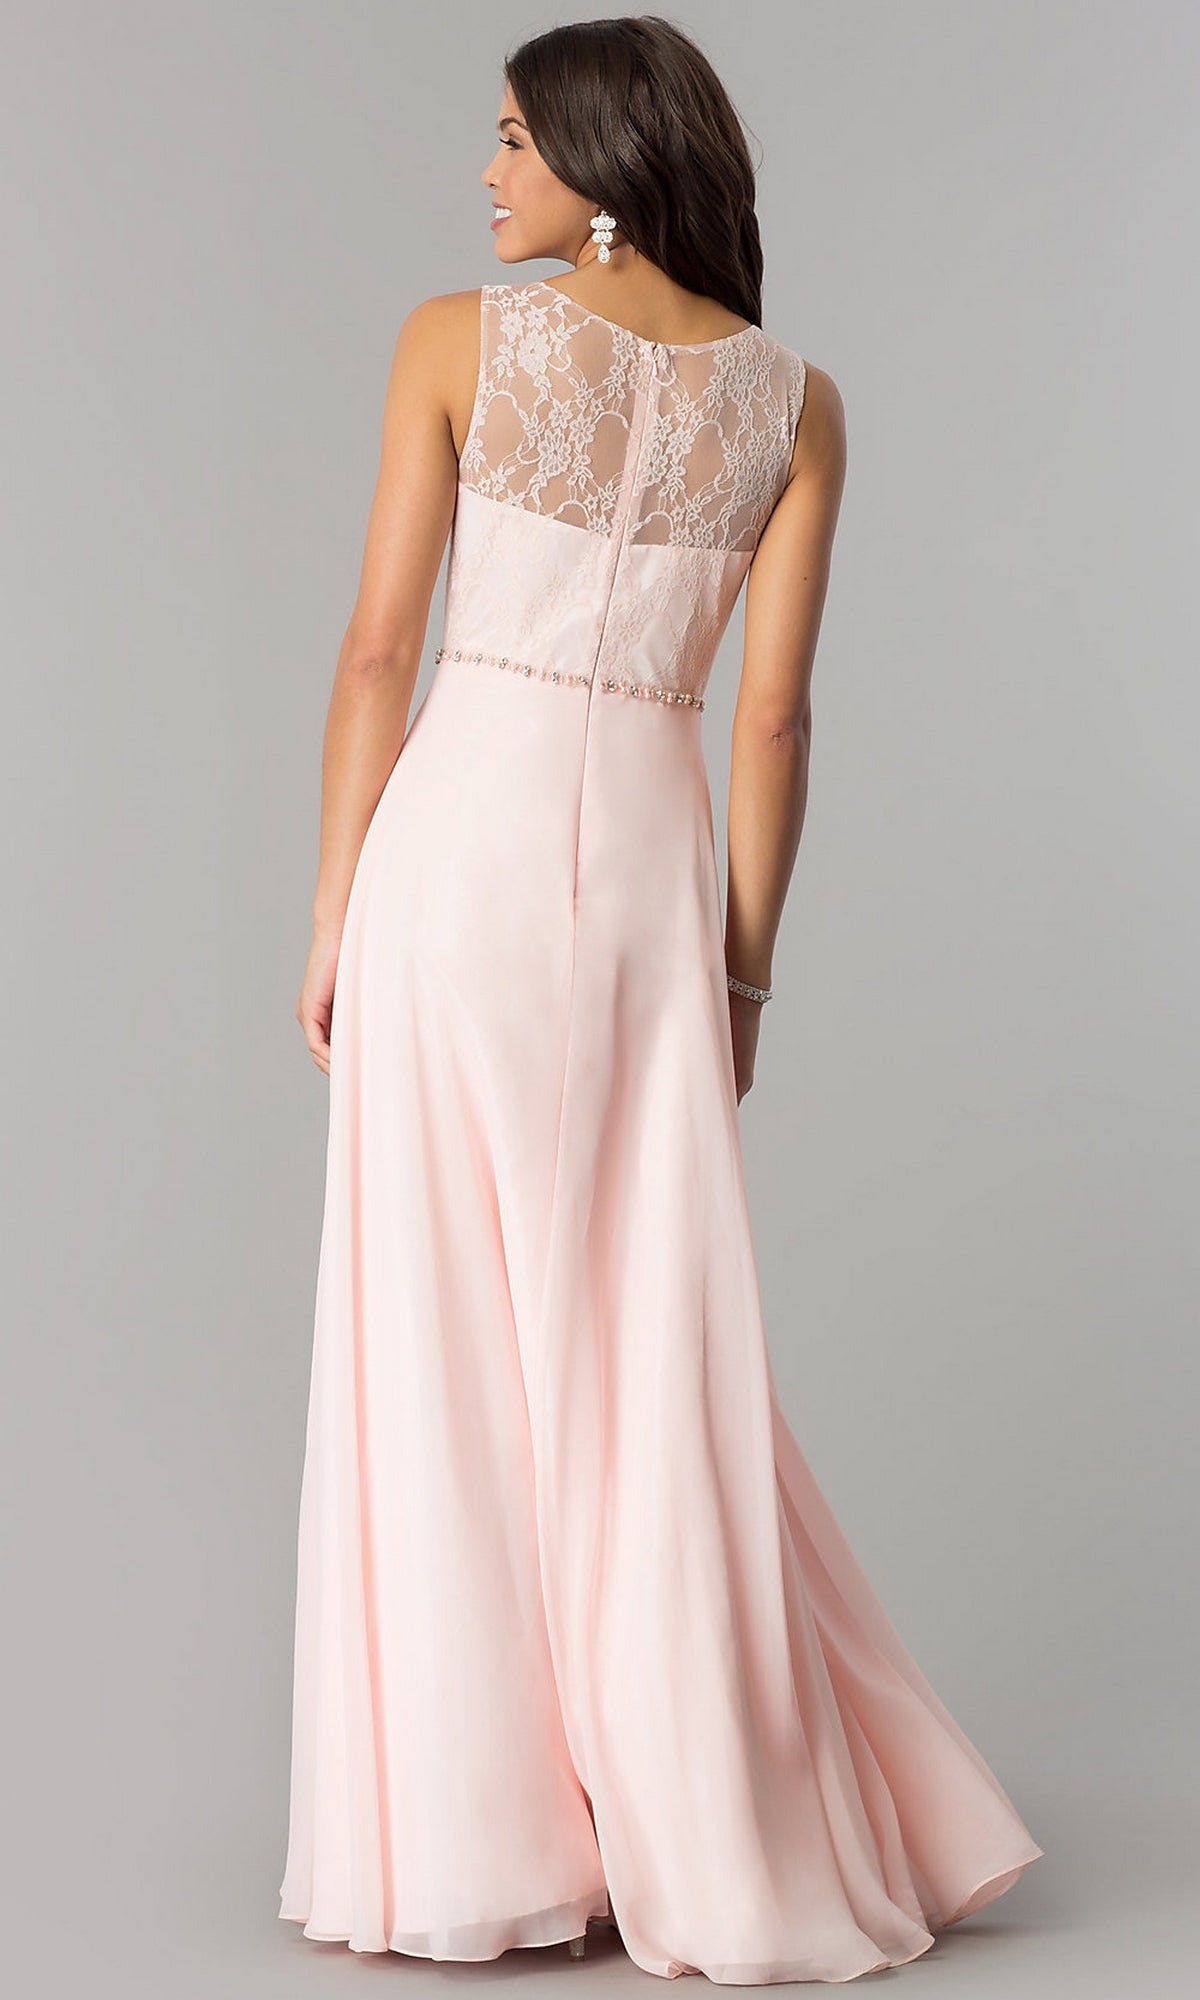 Lace-Bodice Long Chiffon Illusion-Neck Prom Dress